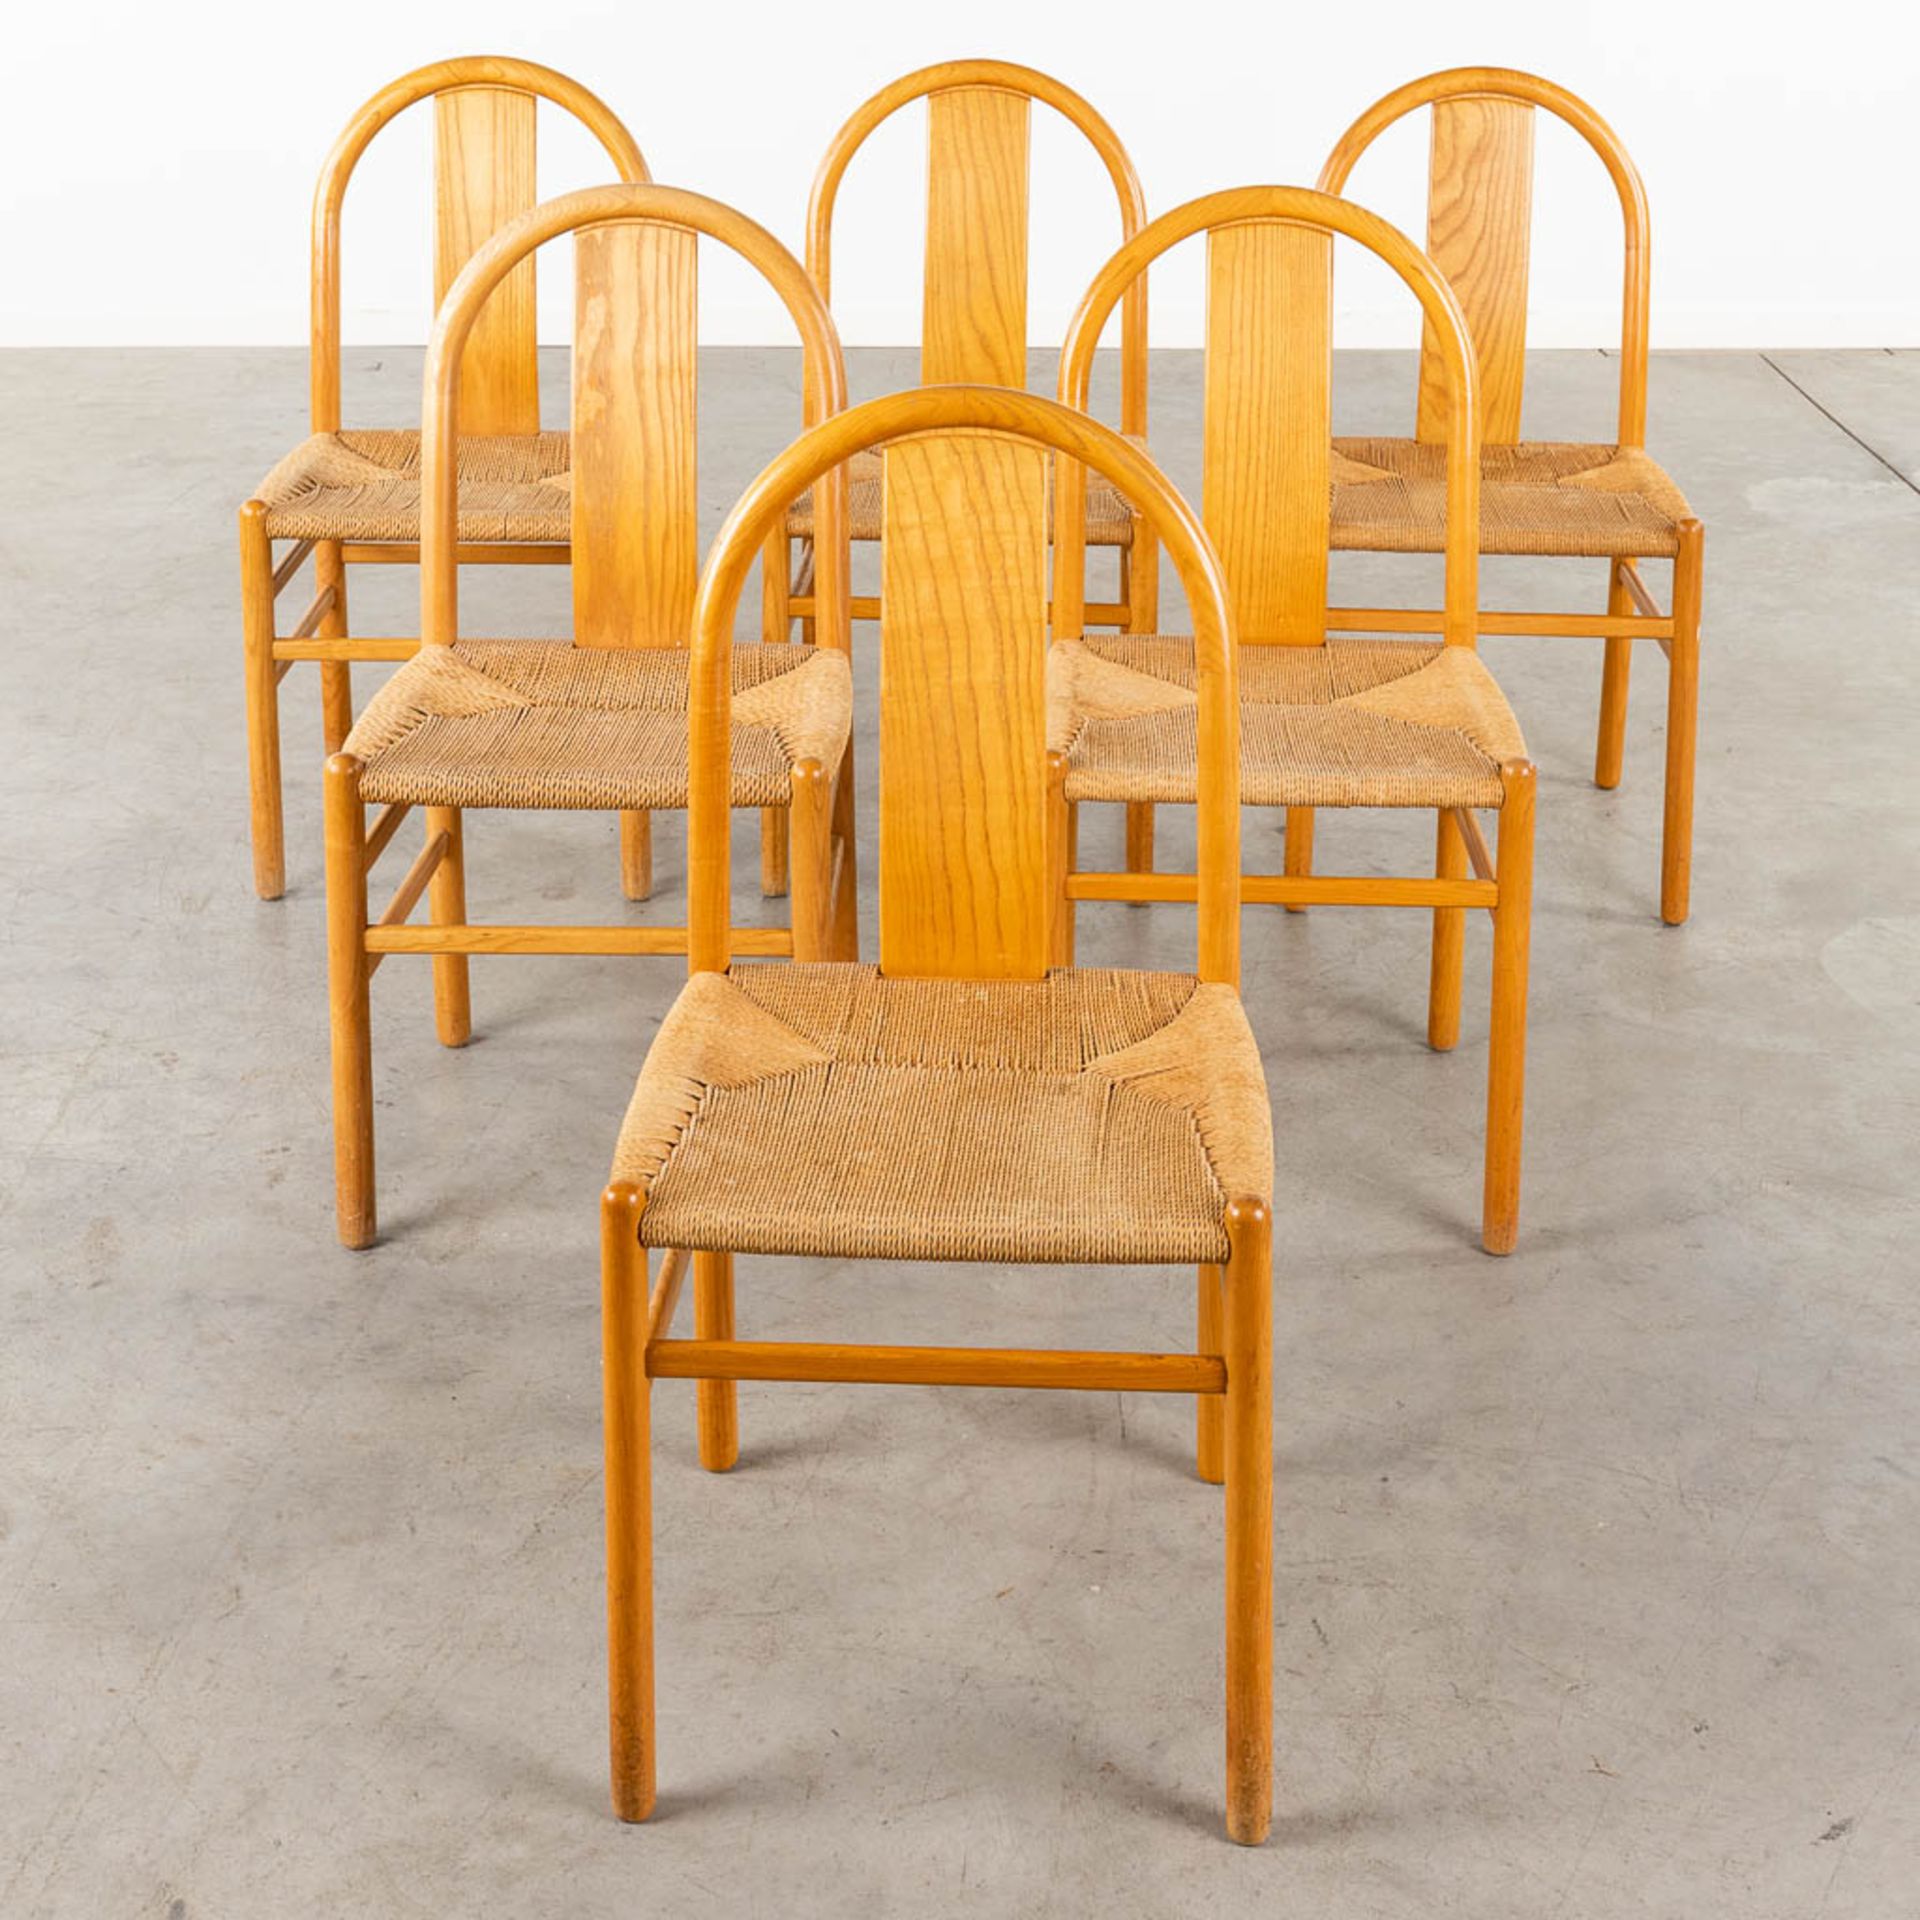 Annig SARIAN (1932) 'Thalia' 6 chairs'. (D:48 x W:44 x H:88 cm)